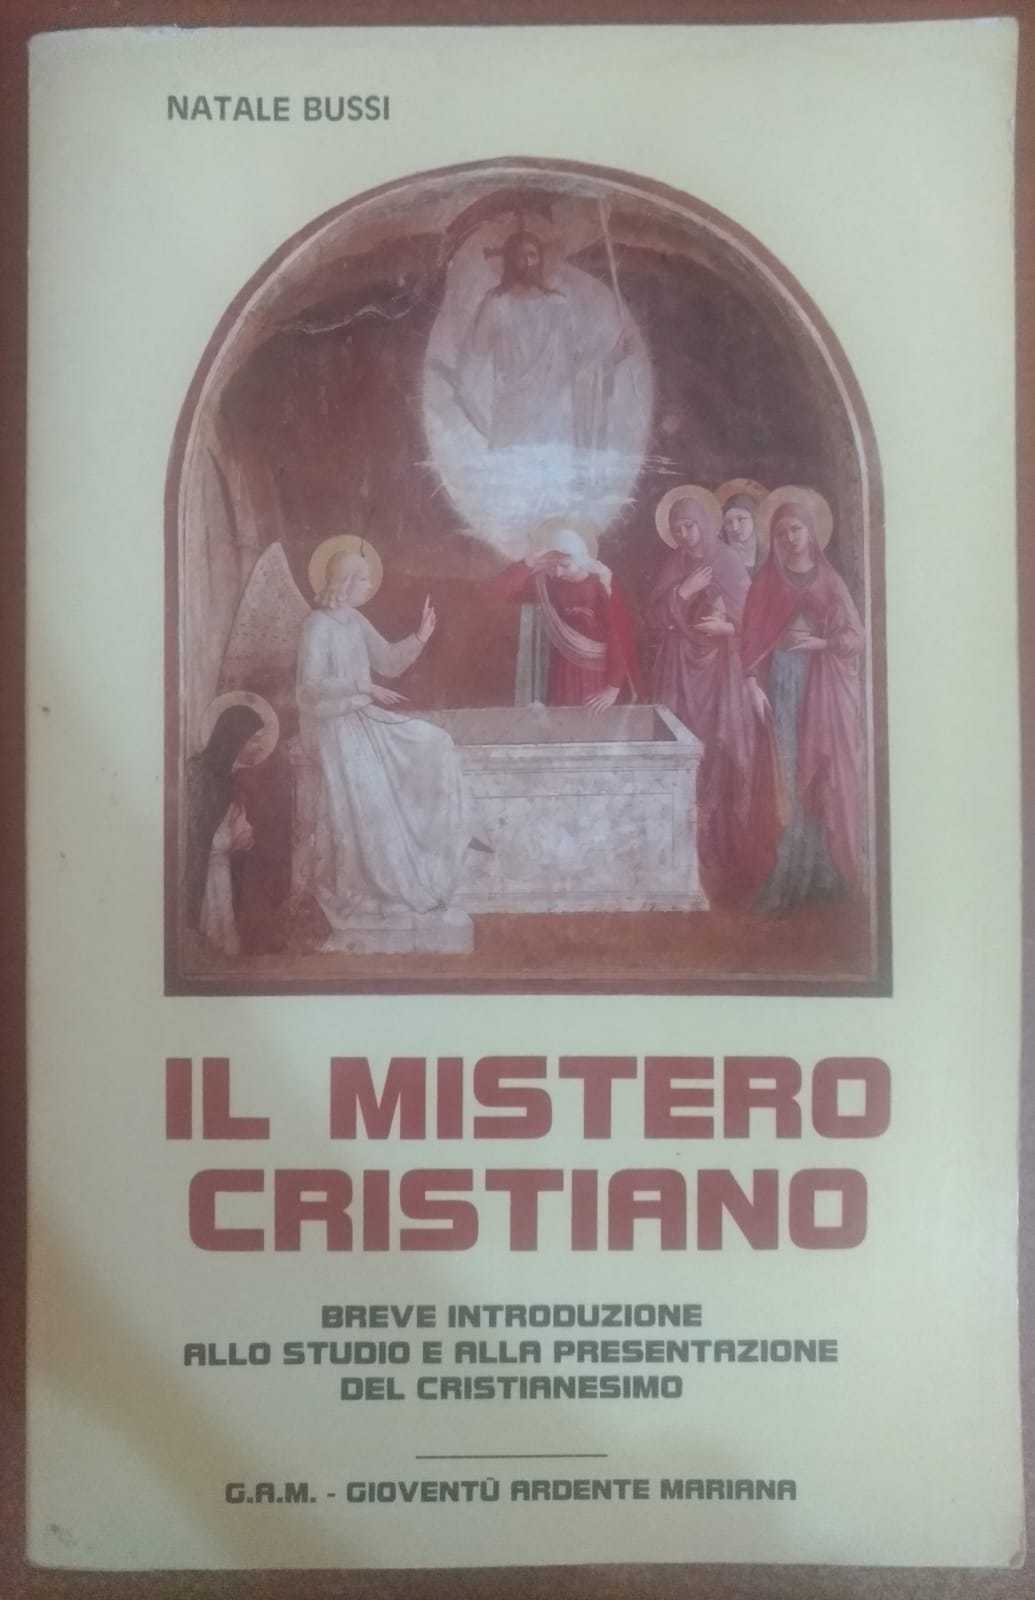 Il mistero cristiano - Natale Bussi,1986,G.A.M. giovent? ardente mariana - S